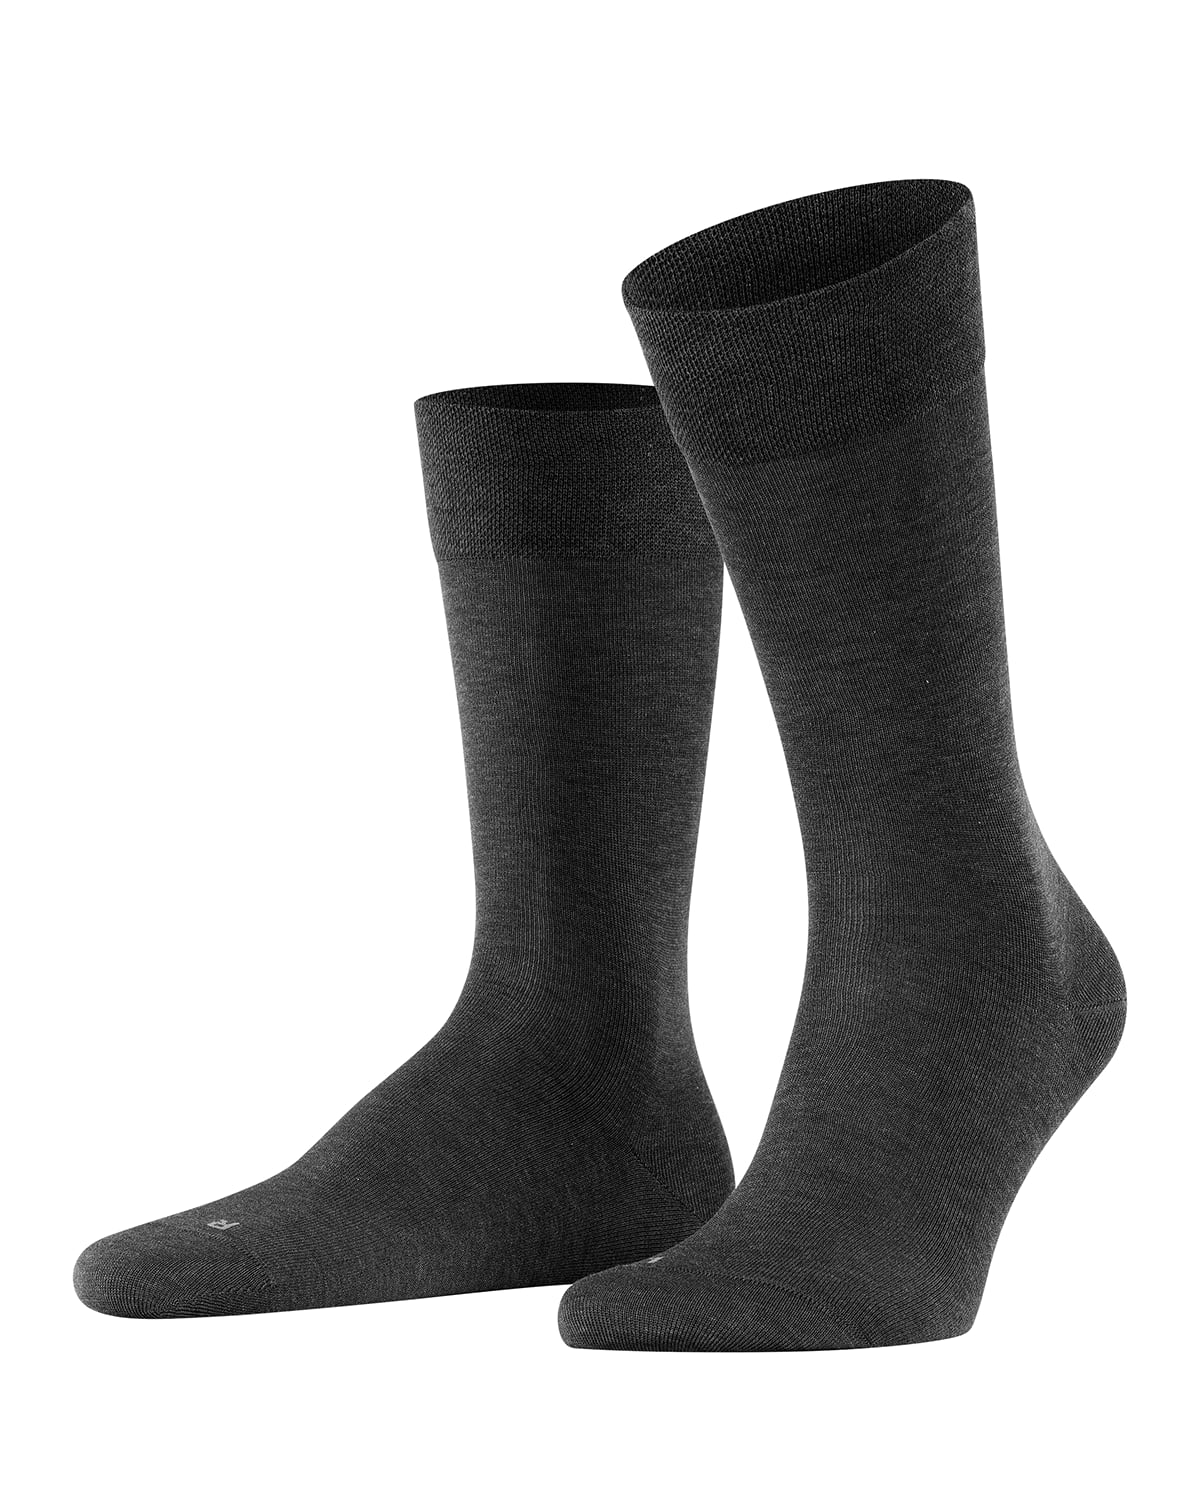 Falke Men's Sensitive Malaga Cotton Socks In Anthracite